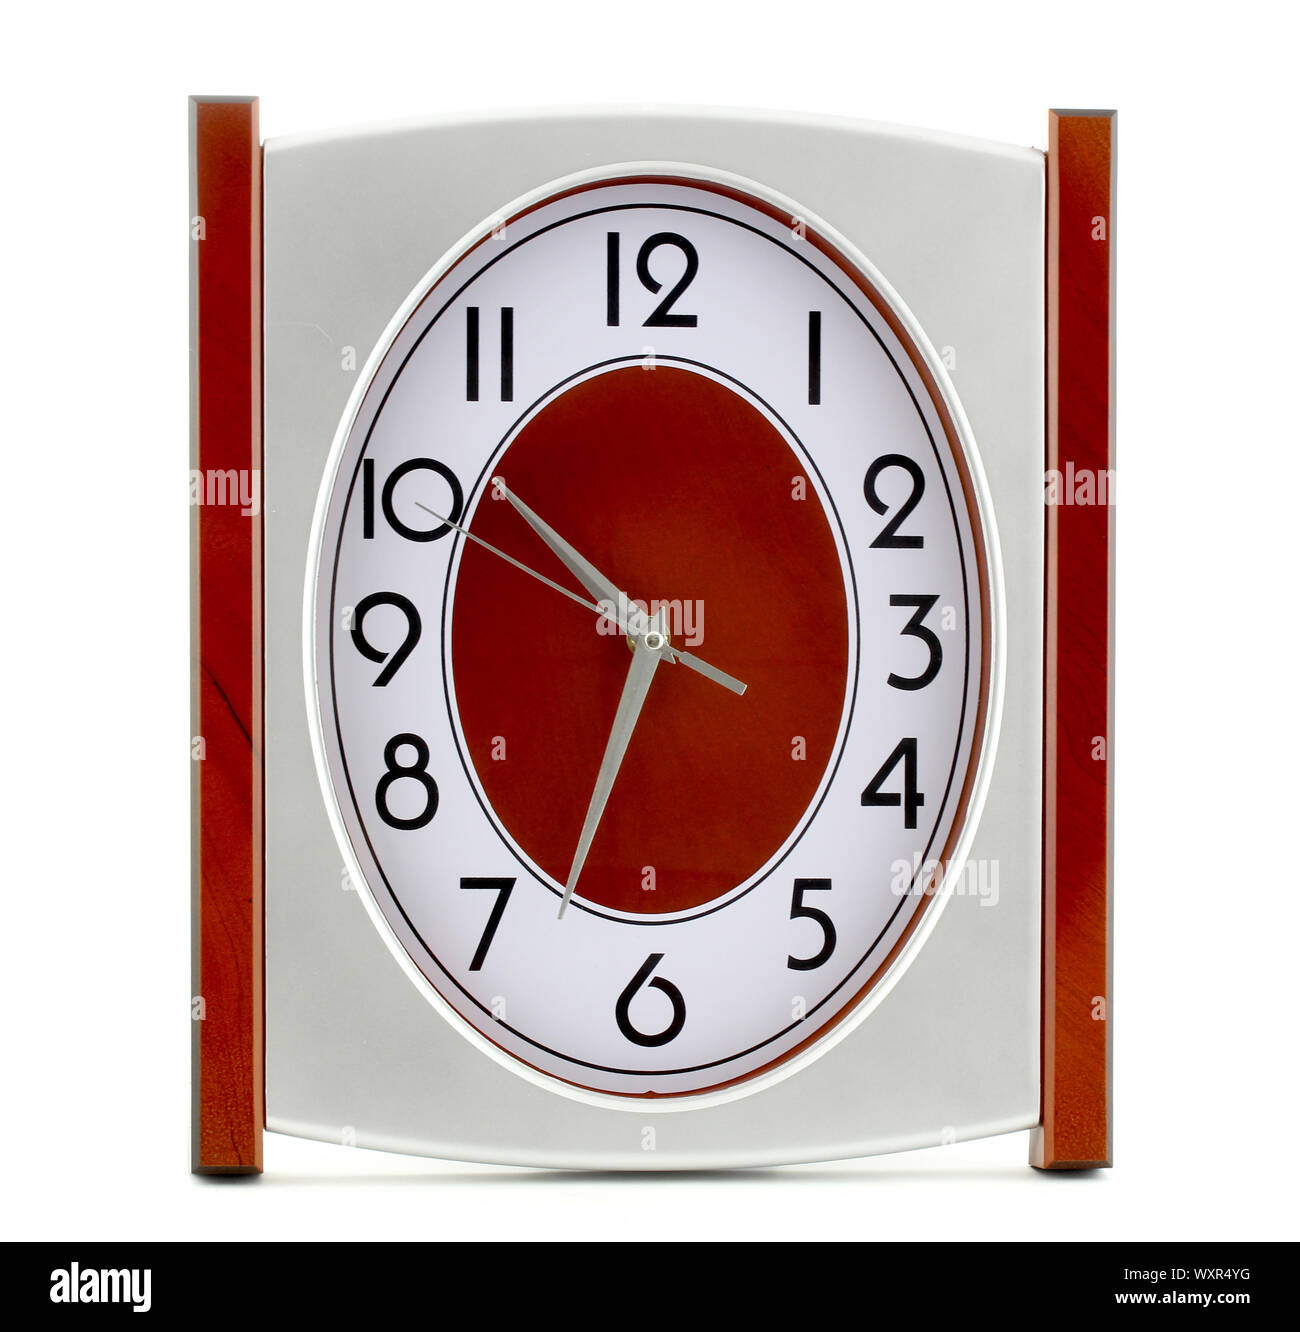 Un reloj de metal aislado en el fondo blanco. El reloj tiene un centro rojo. Foto de stock